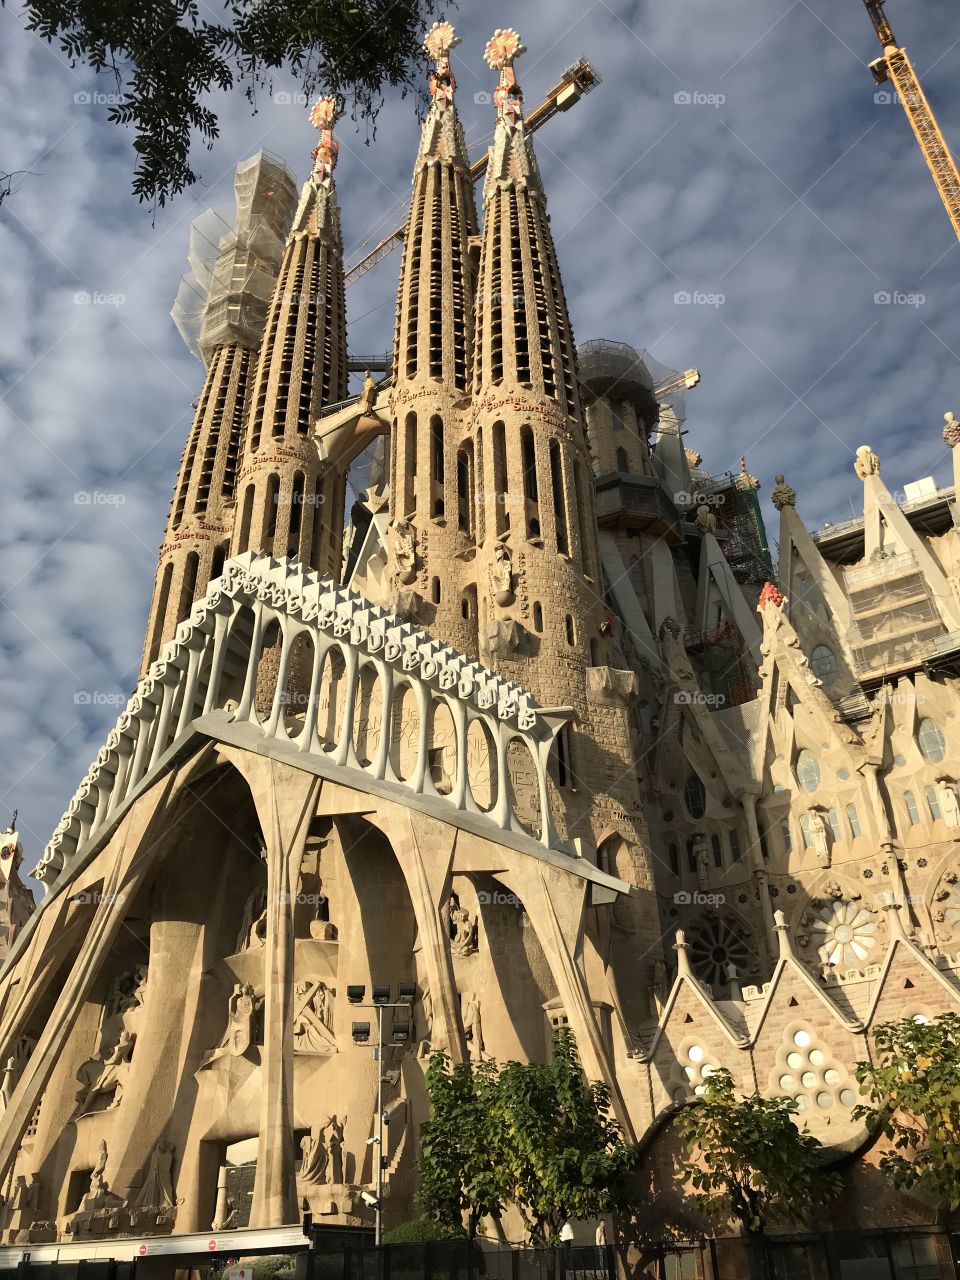 The front facade of the Sagrada Familia 